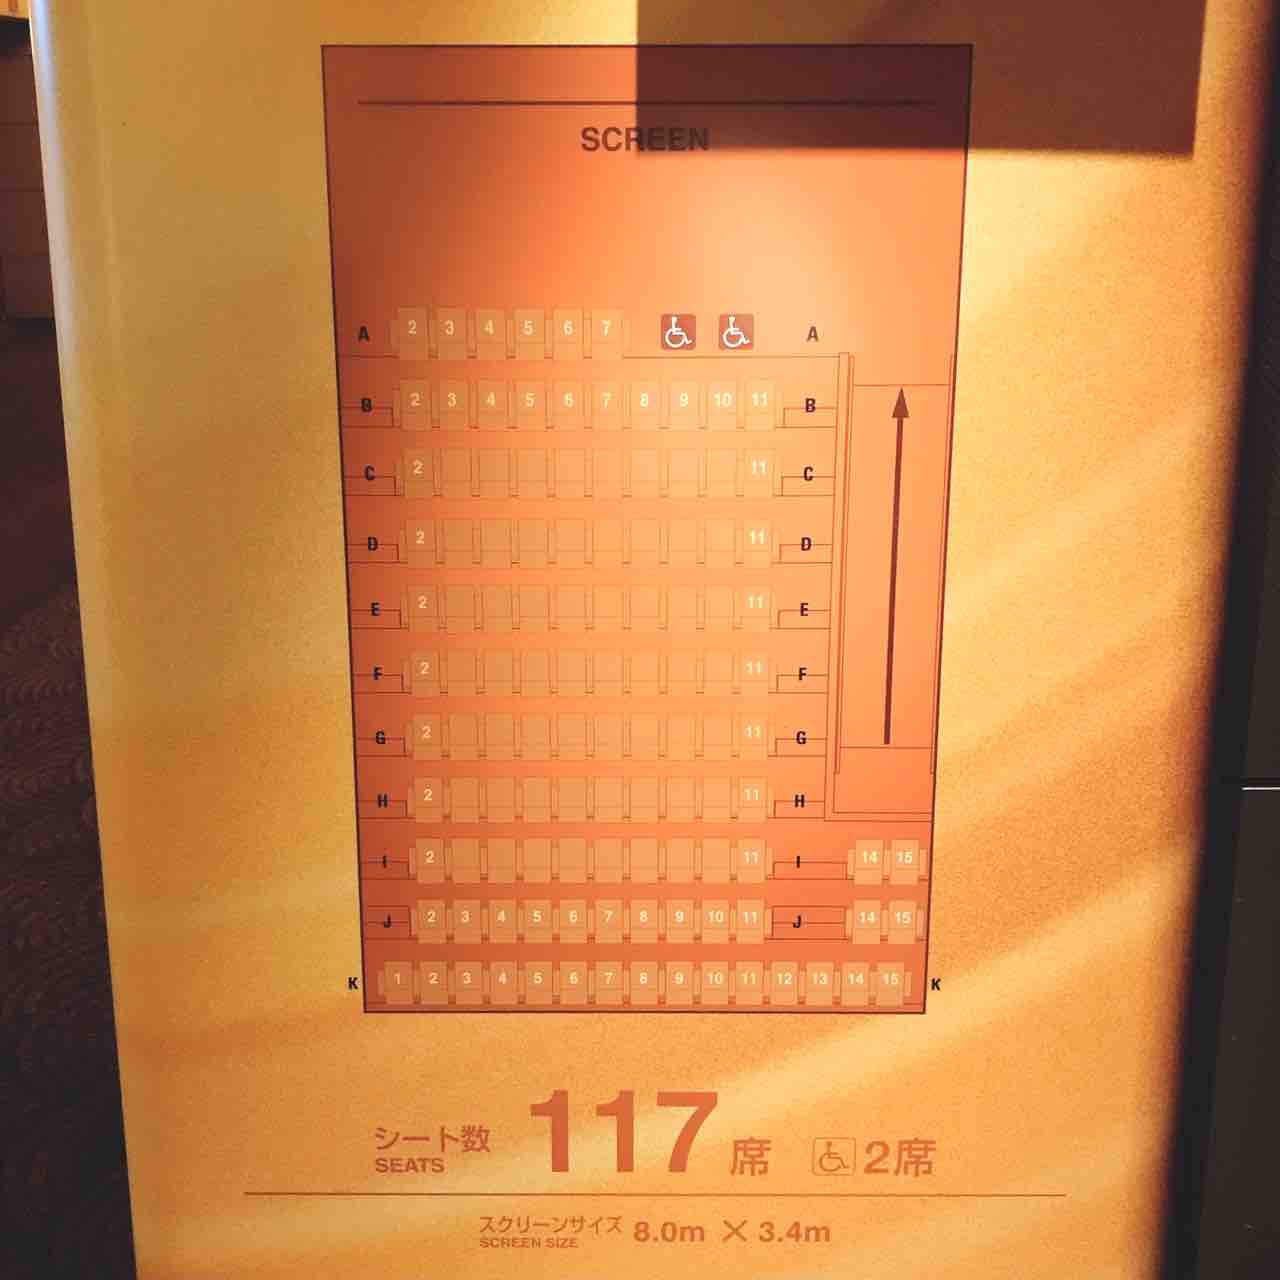 Tohoシネマズららぽーと横浜 スクリーン9 座席表のおすすめの見やすい席 トーキョー映画館番長